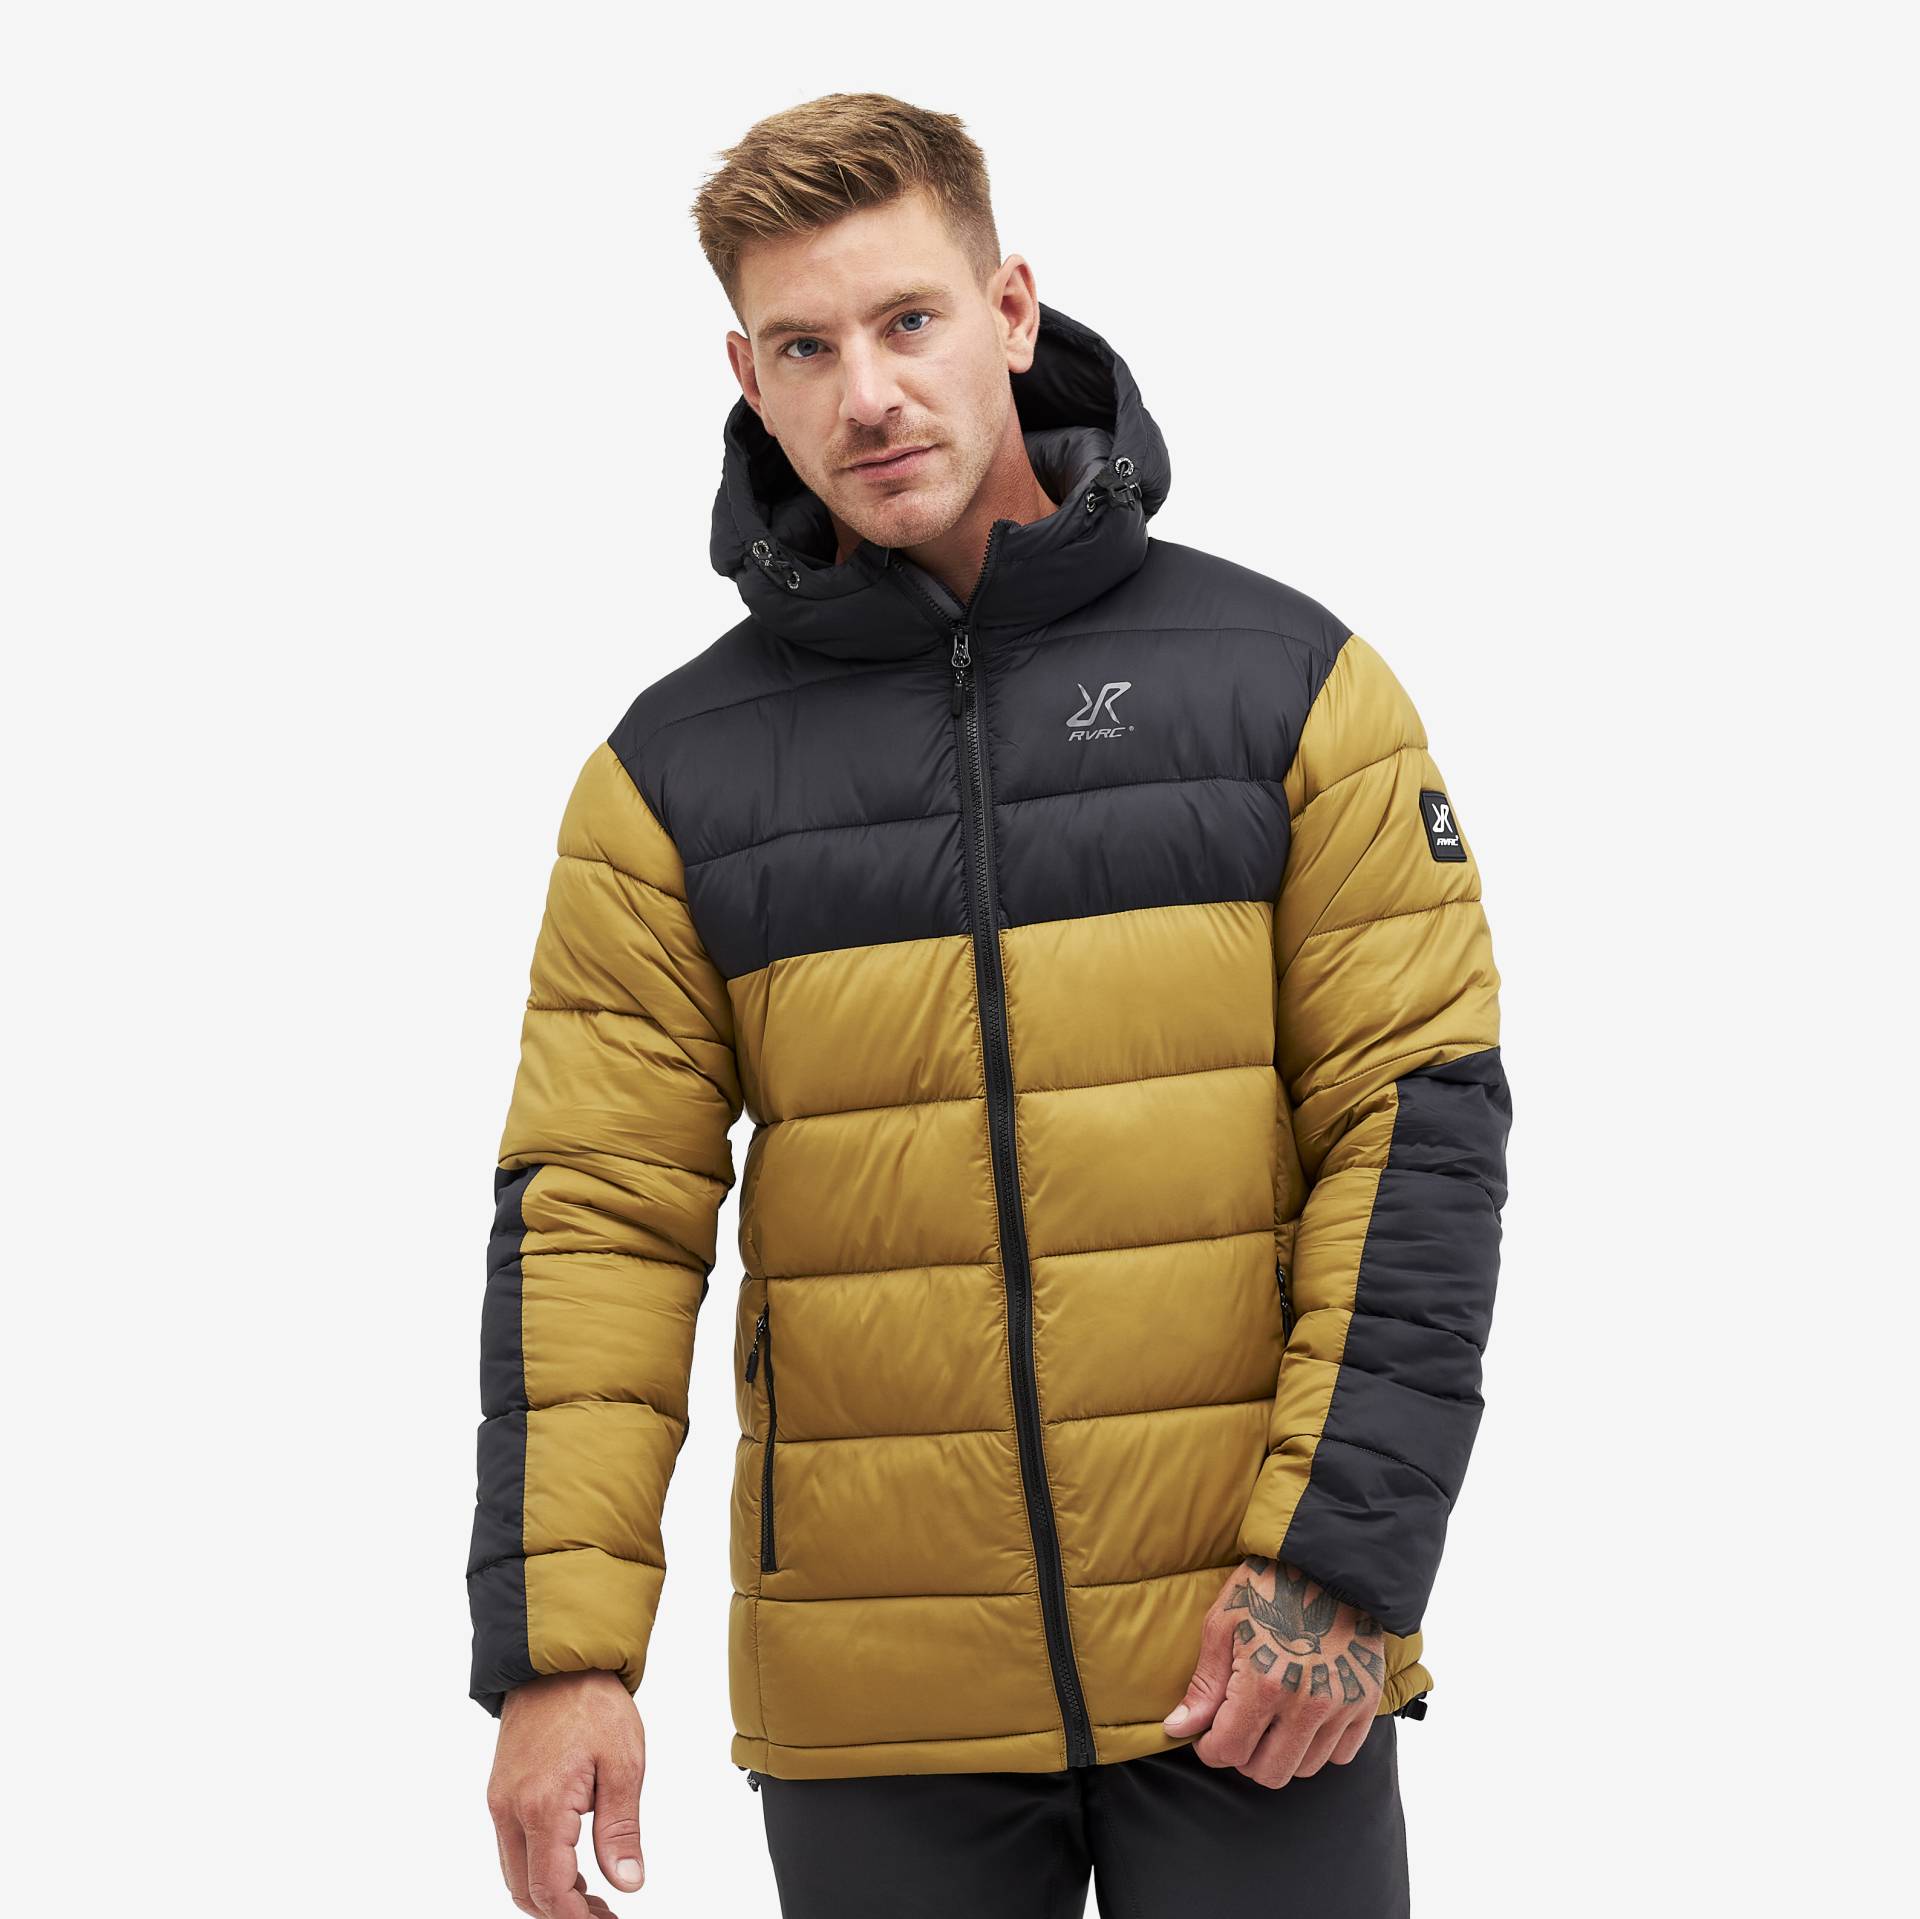 Mongoose Jacket Herren Firewood, Größe:XL - Winterjacken von RevolutionRace